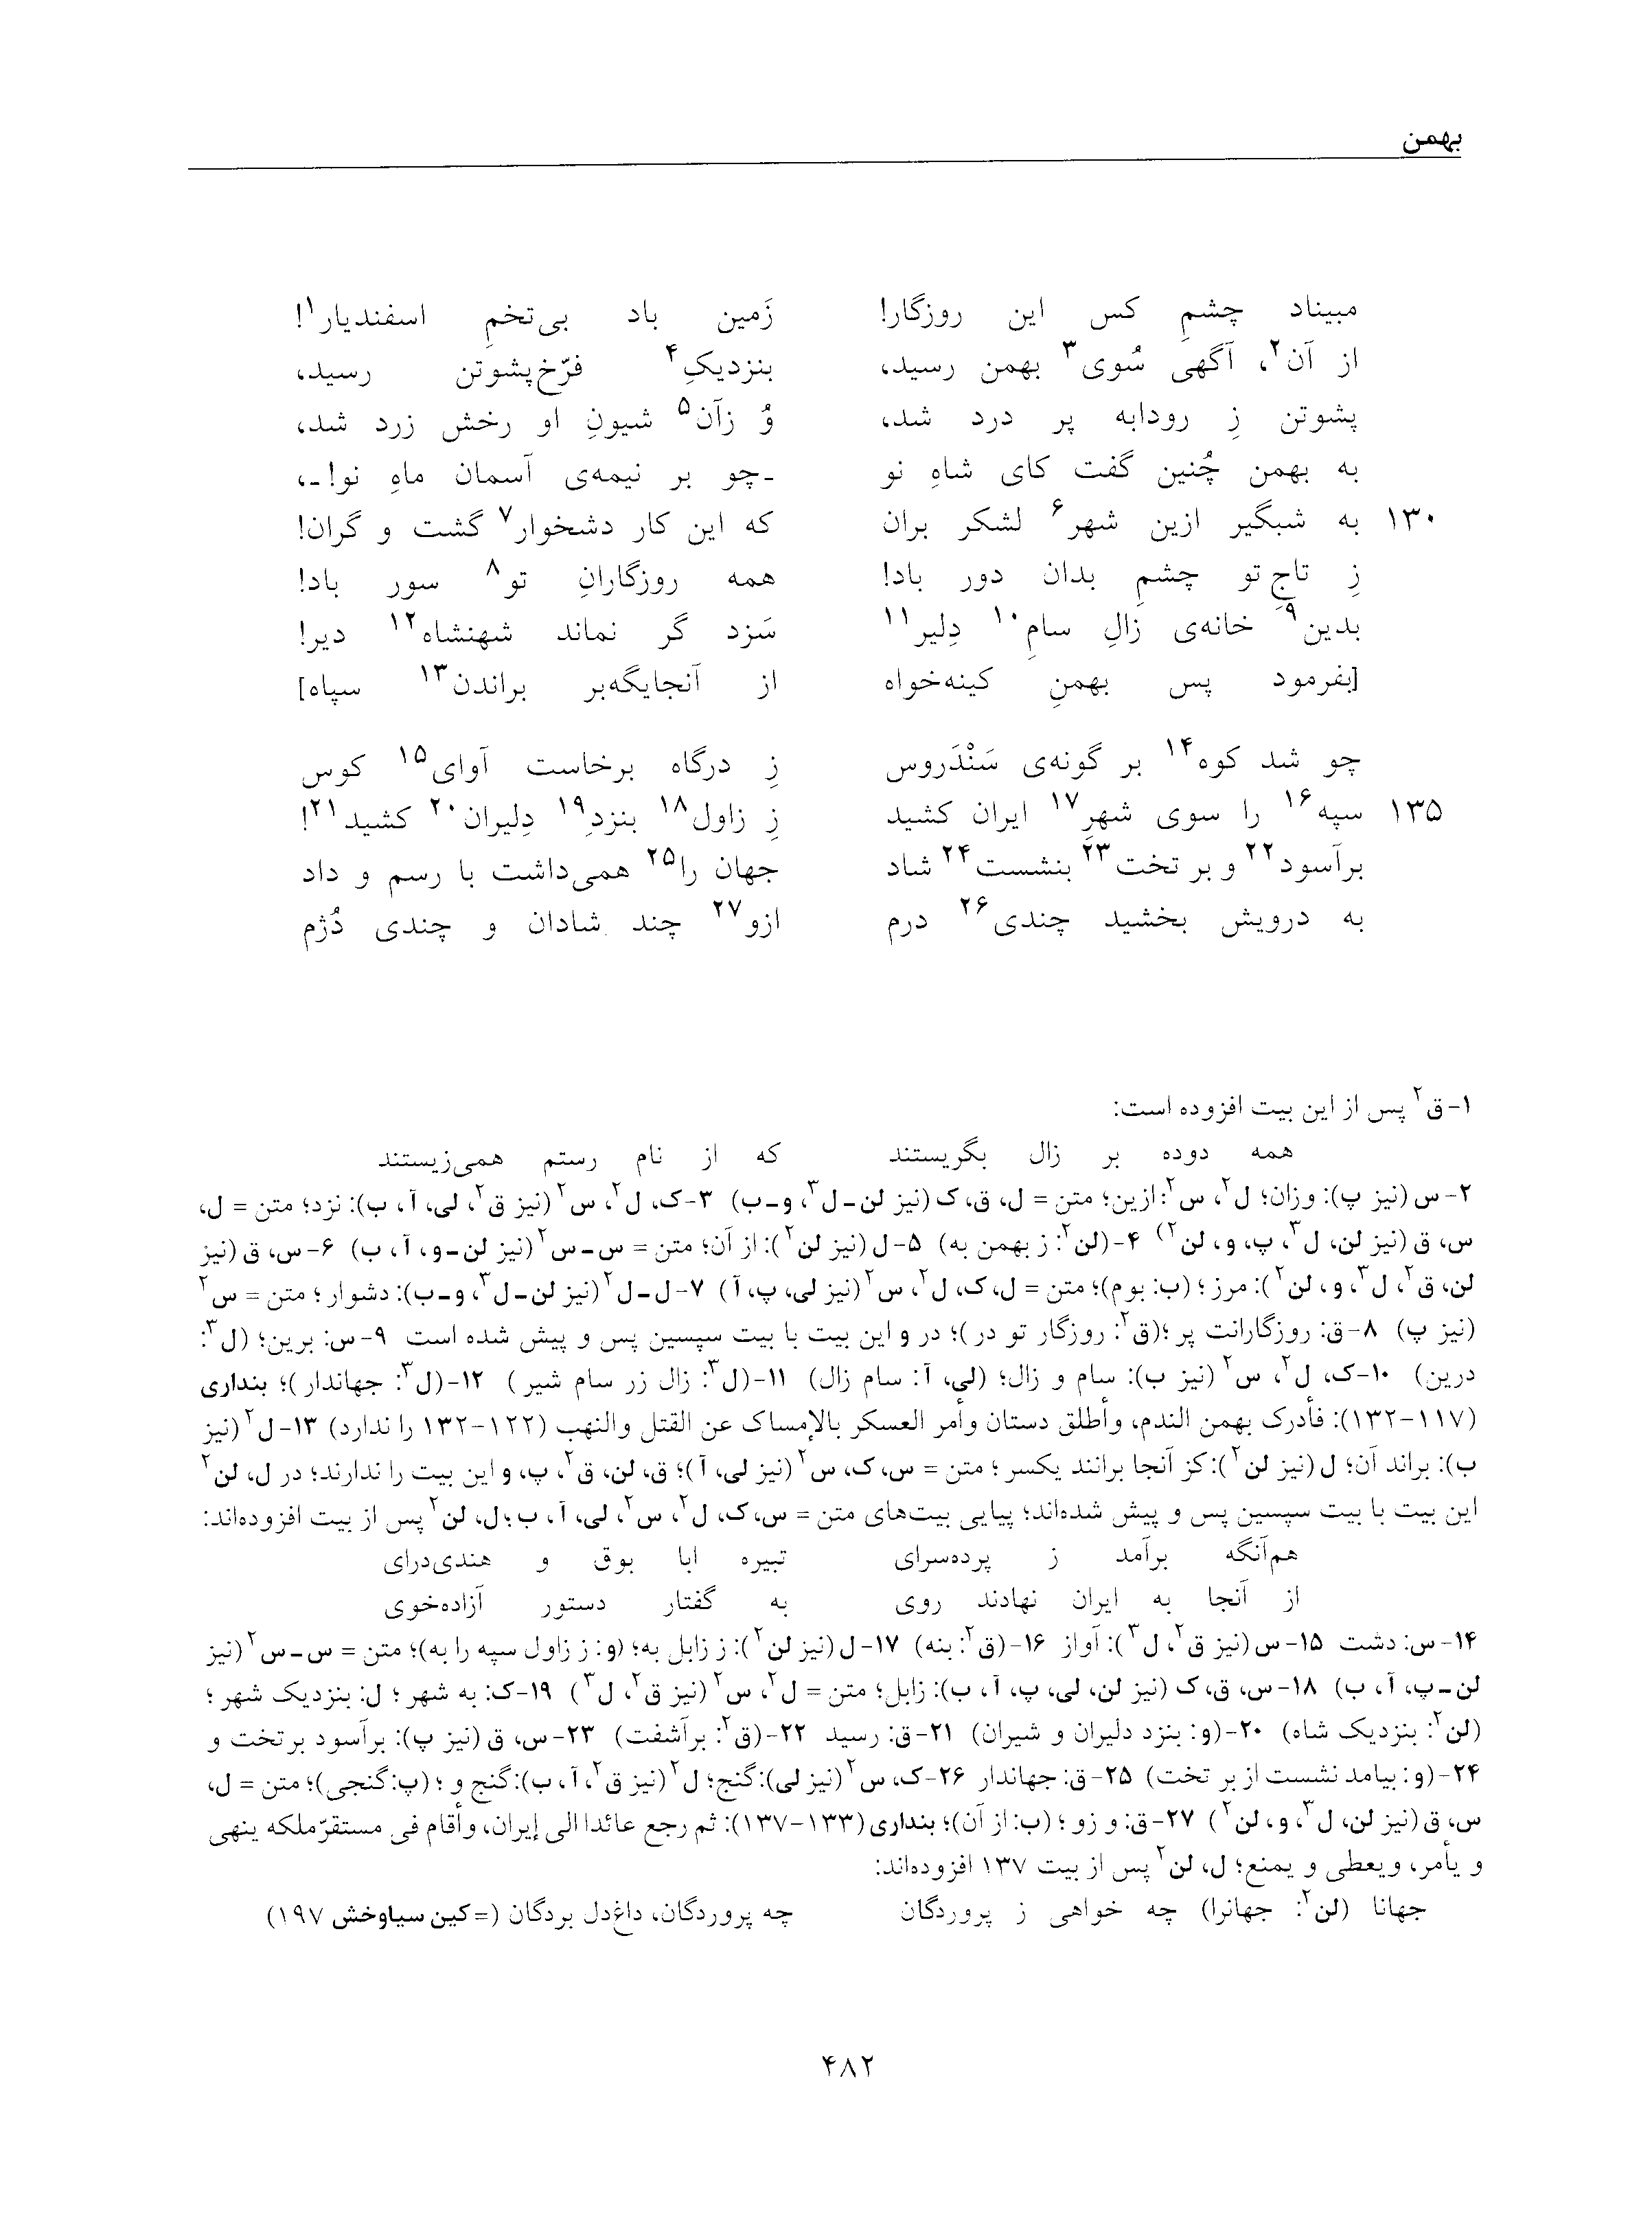 vol. 5, p. 482